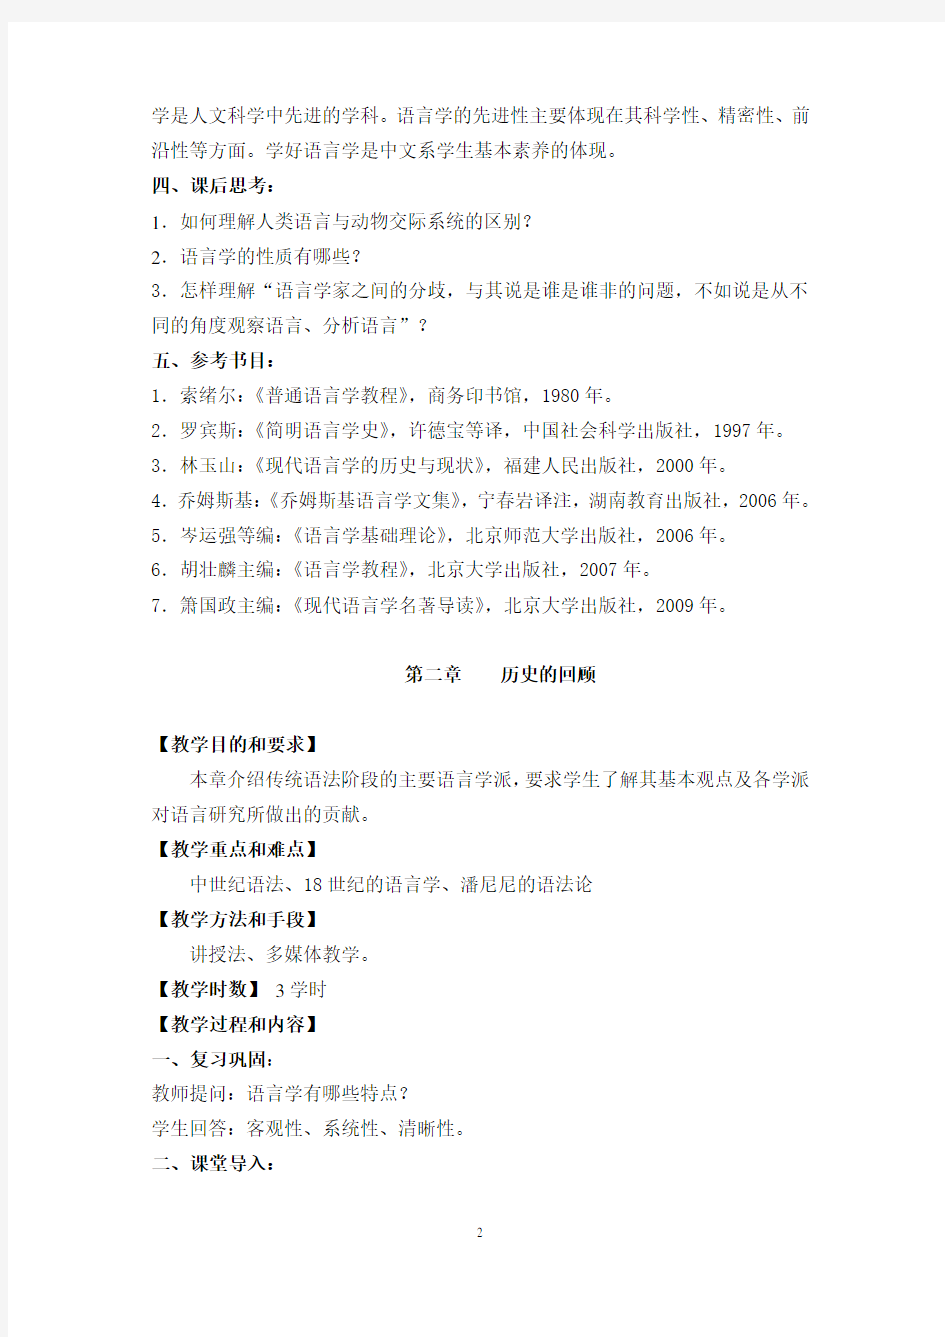 刘润清《西方语言学史》教案(20130828)